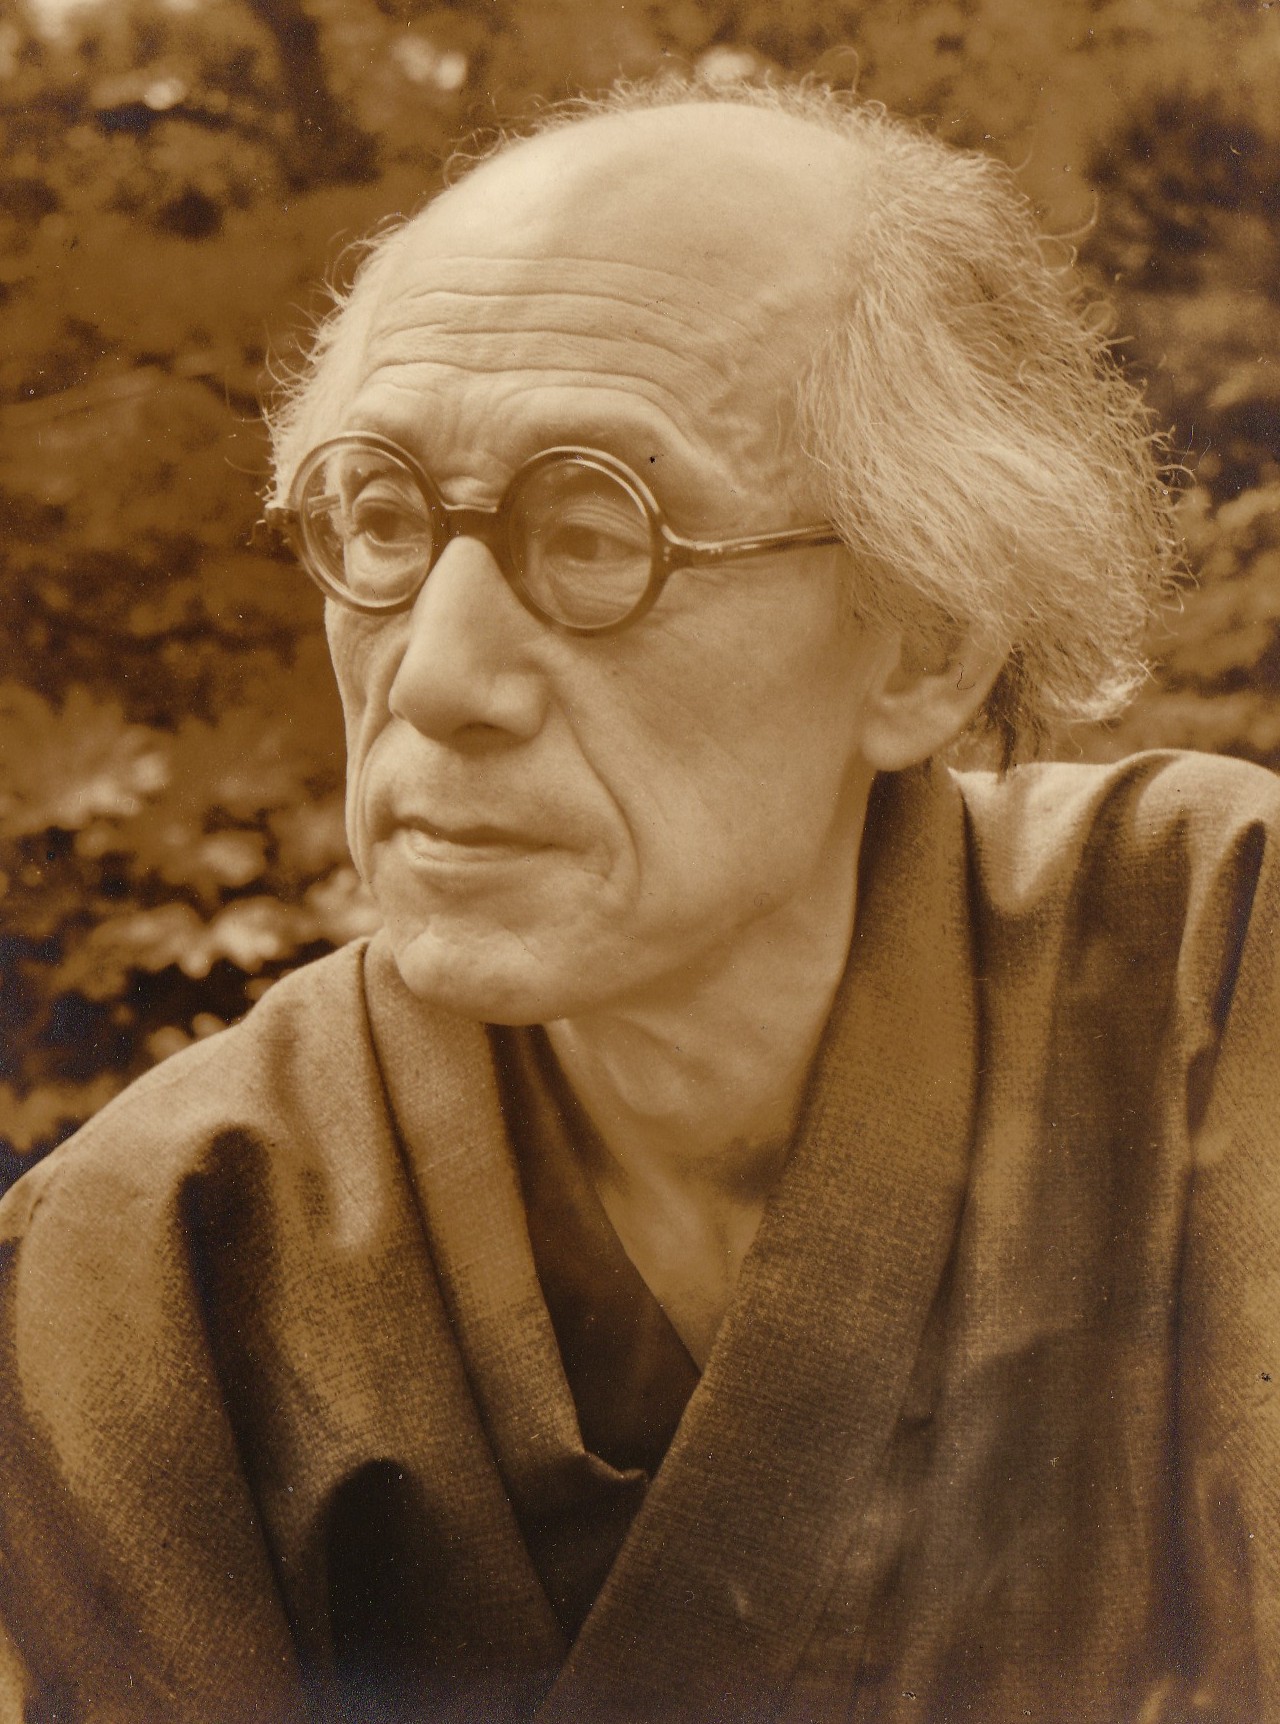 Samezō Kuruma